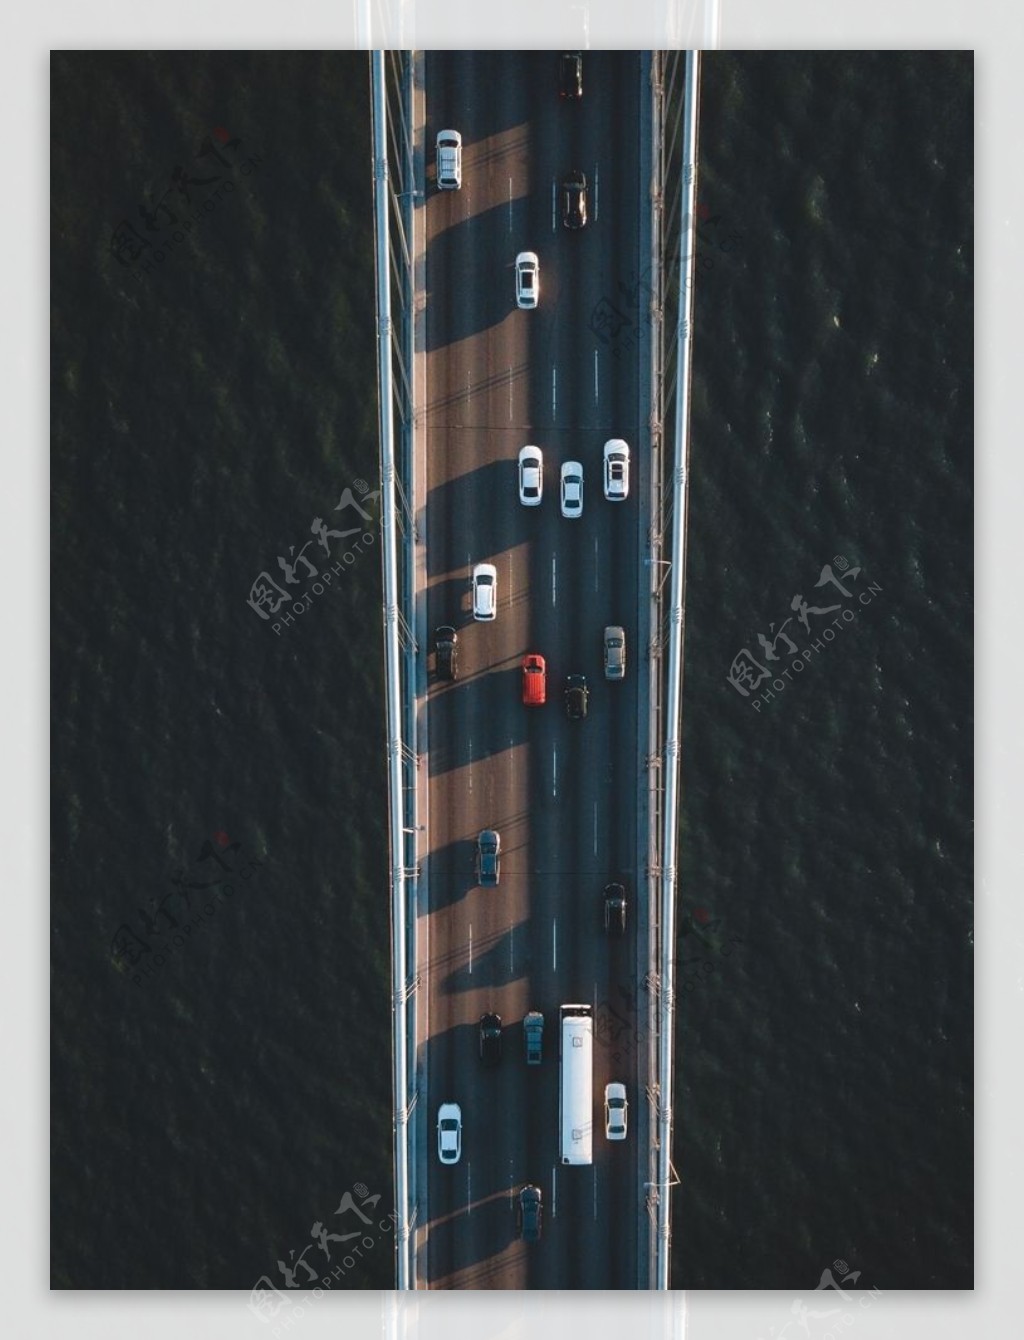 跨海桥图片